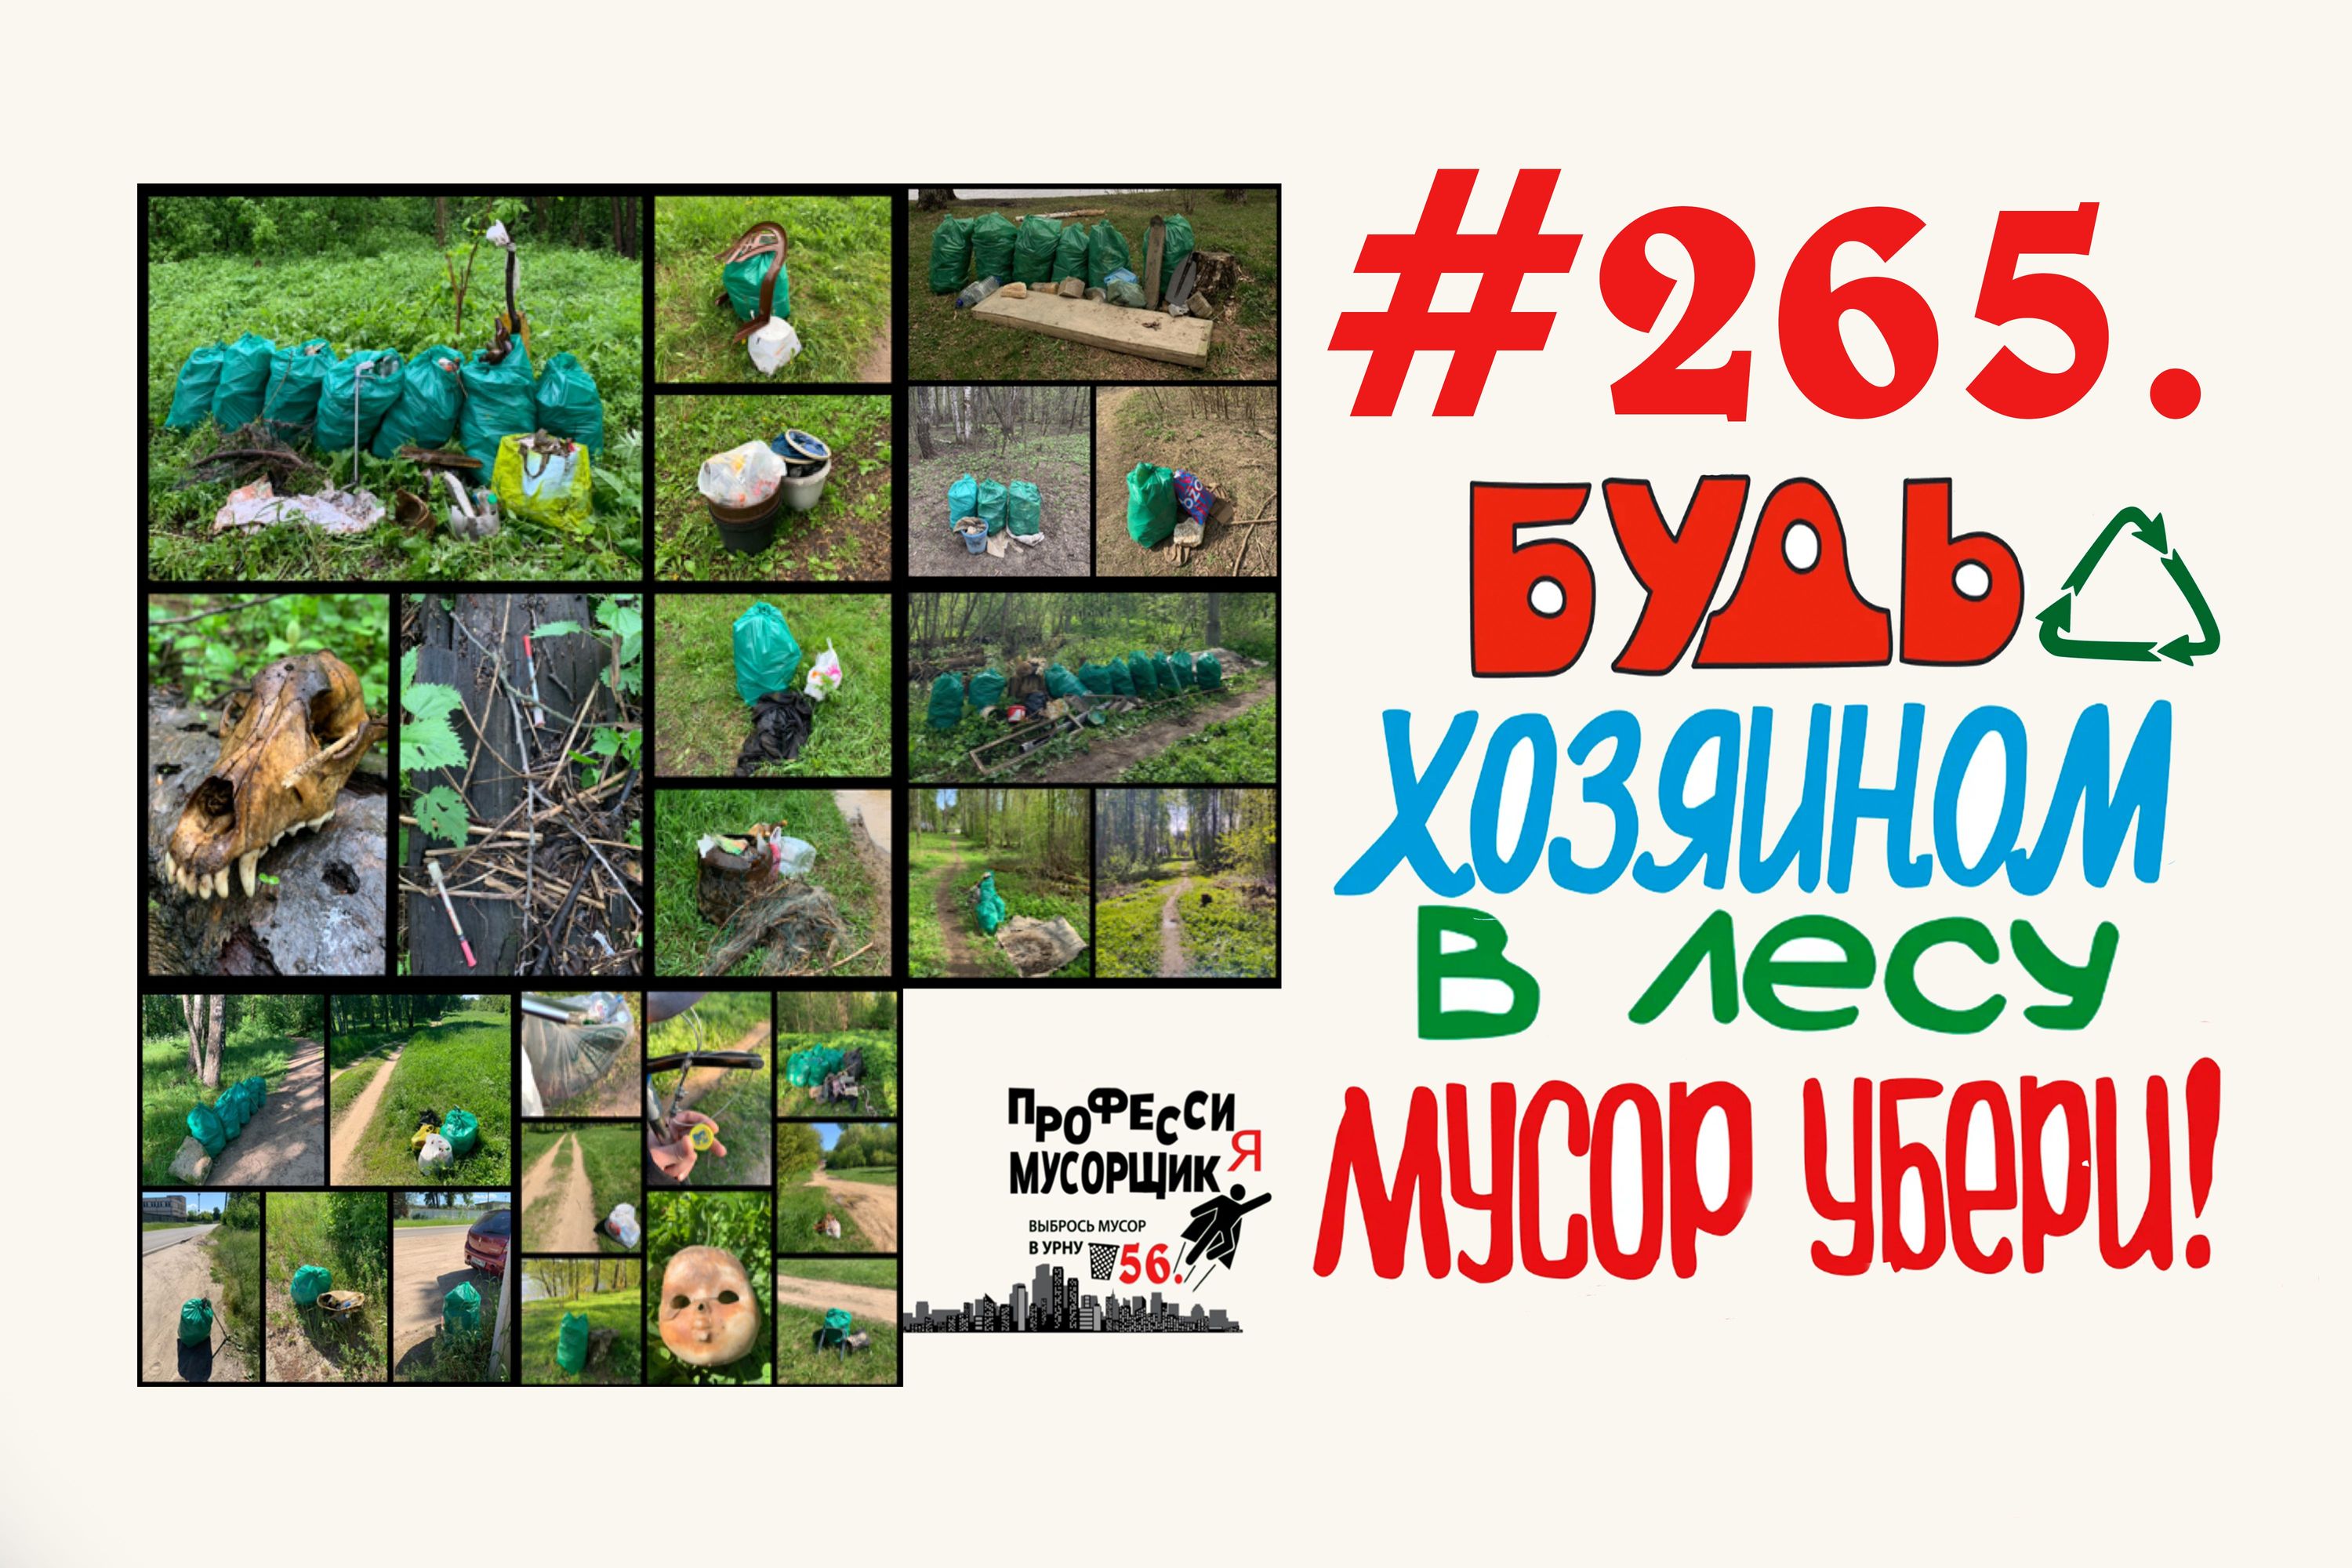 Субботник в лесу завершен, собранно 56 мешков мусора   #265 Орехово-Зуево